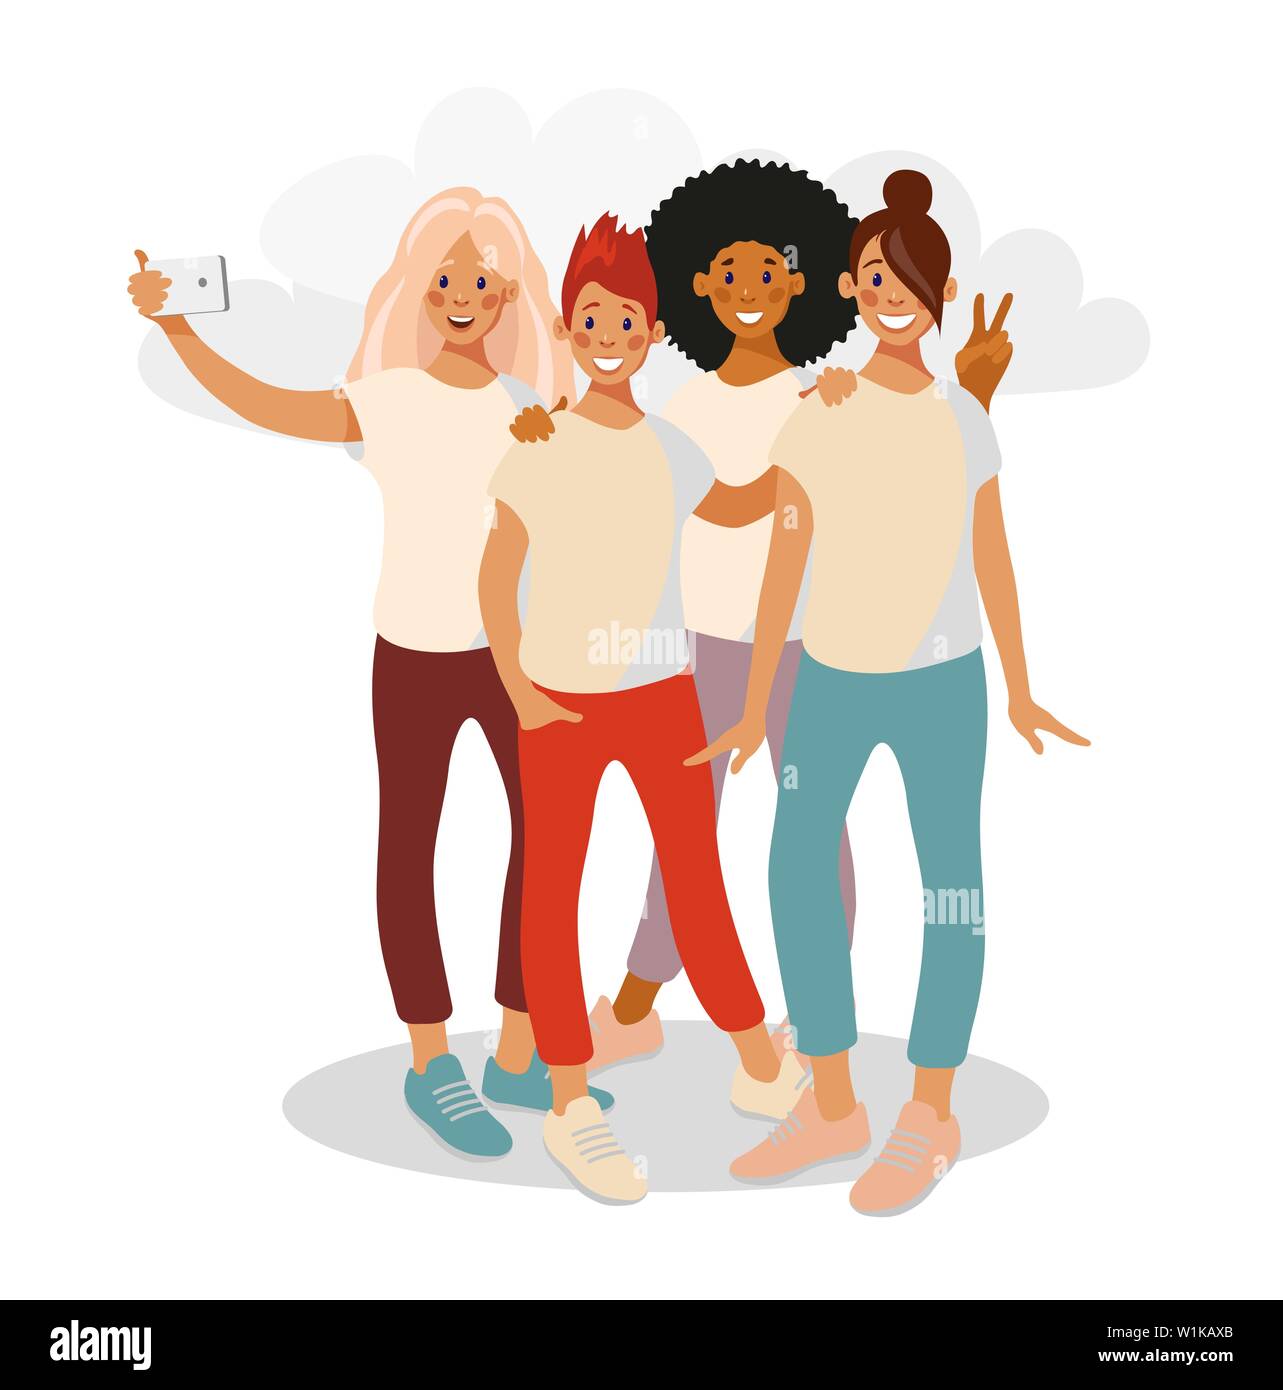 Ragazza adolescente amici prendendo un selfie sulla fotocamera del telefono. Un gruppo di quattro ragazze di diverse nazionalità fotografia selfies in abiti casual. Illustrazione Vettoriale in appartamento in stile cartone animato. Illustrazione Vettoriale